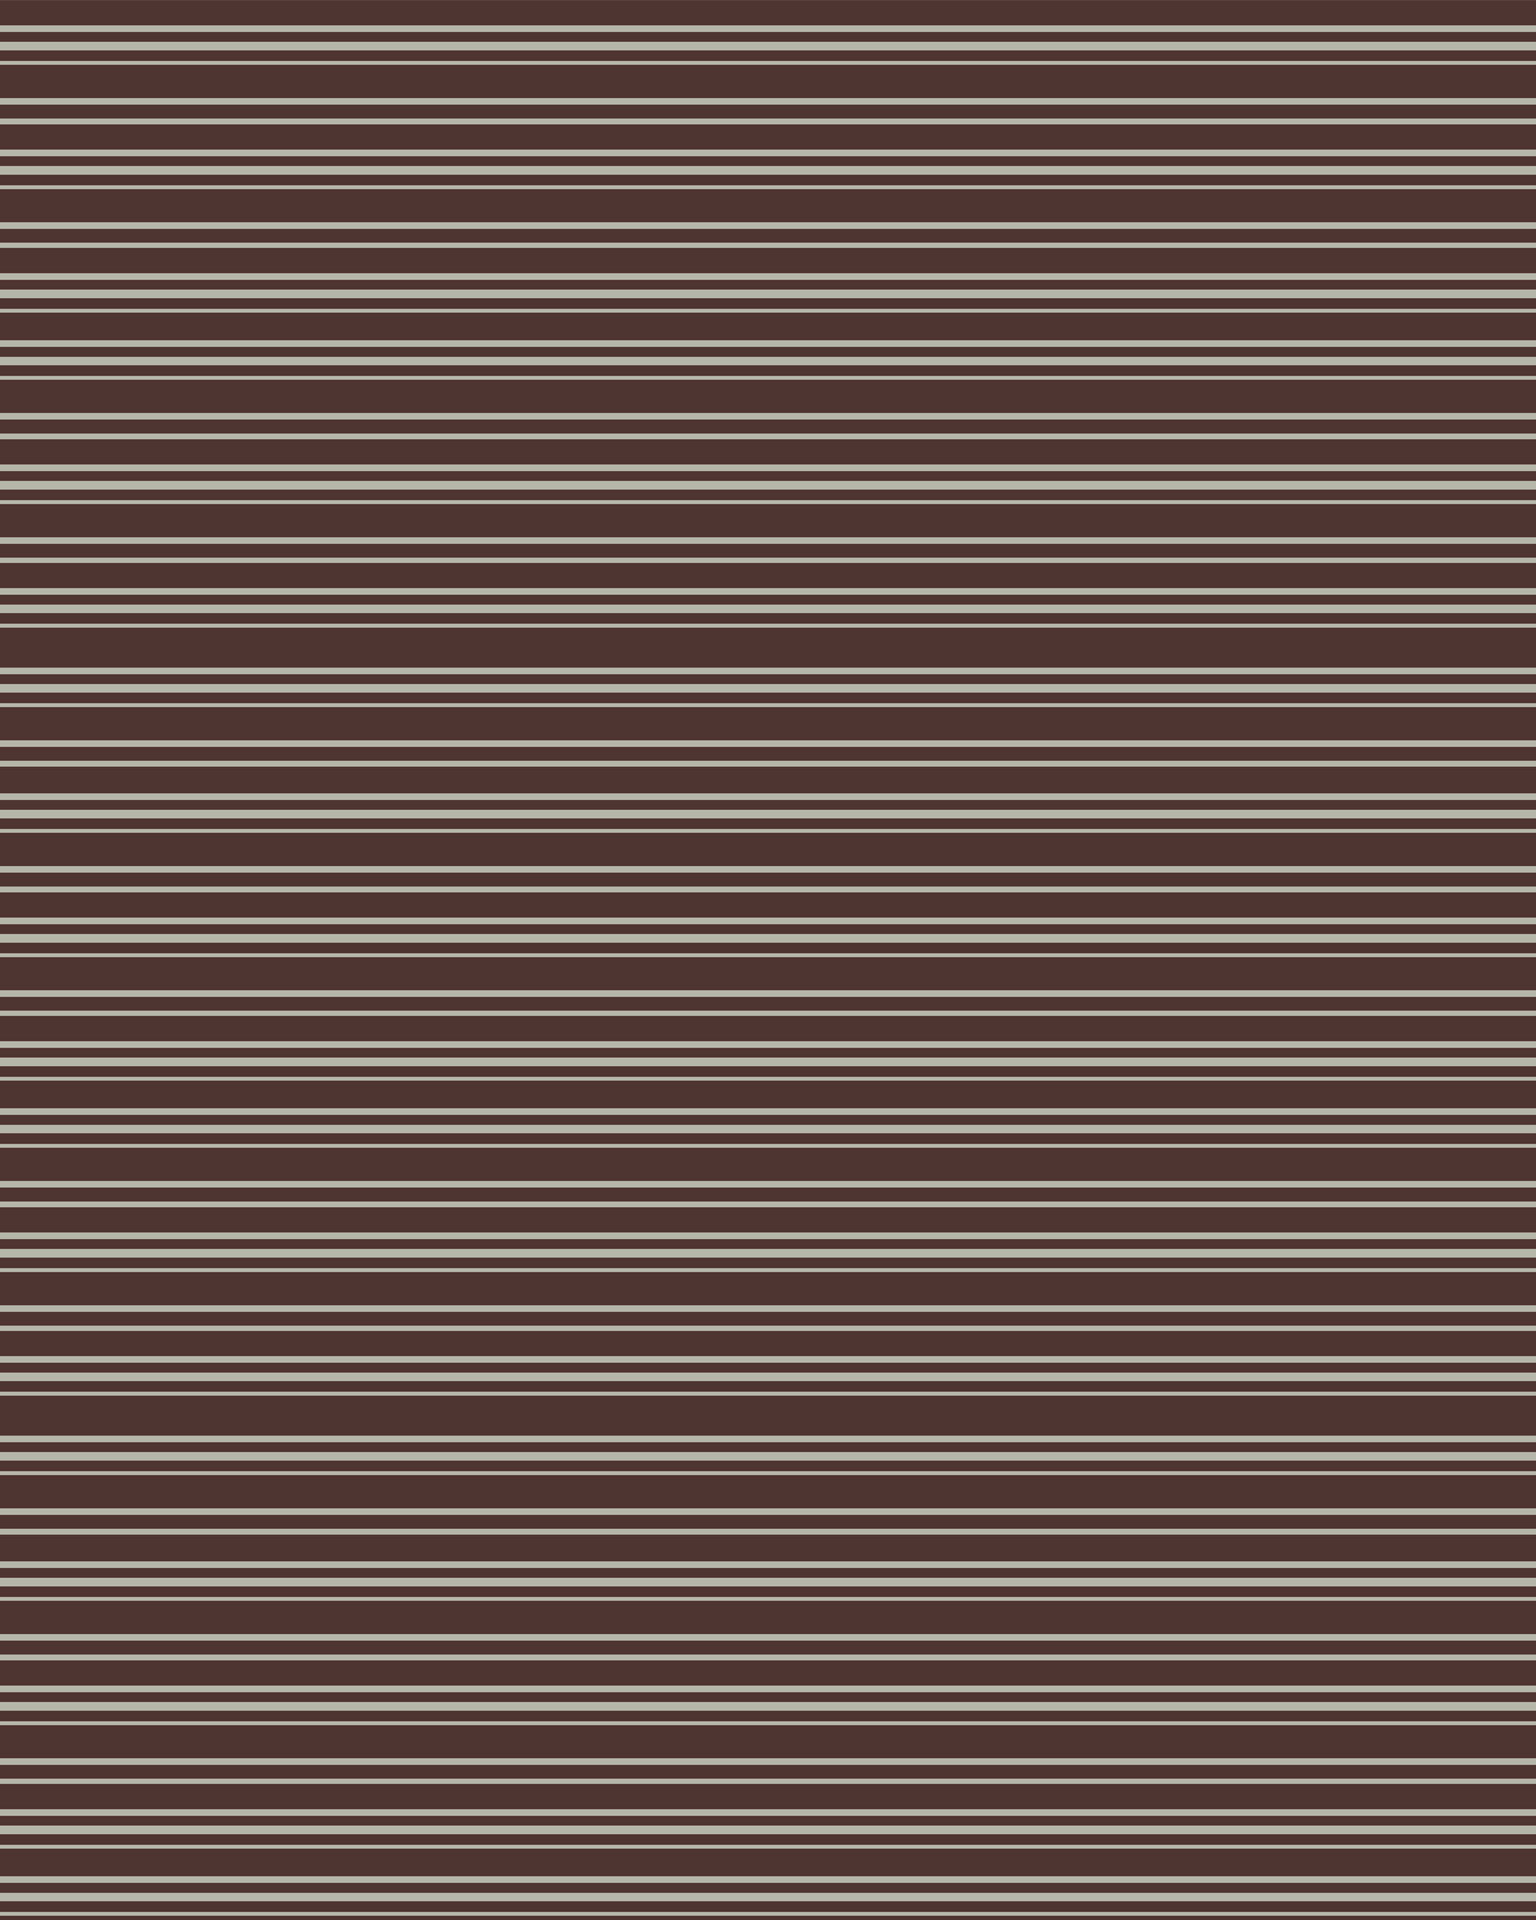 brown tan stripes free photo